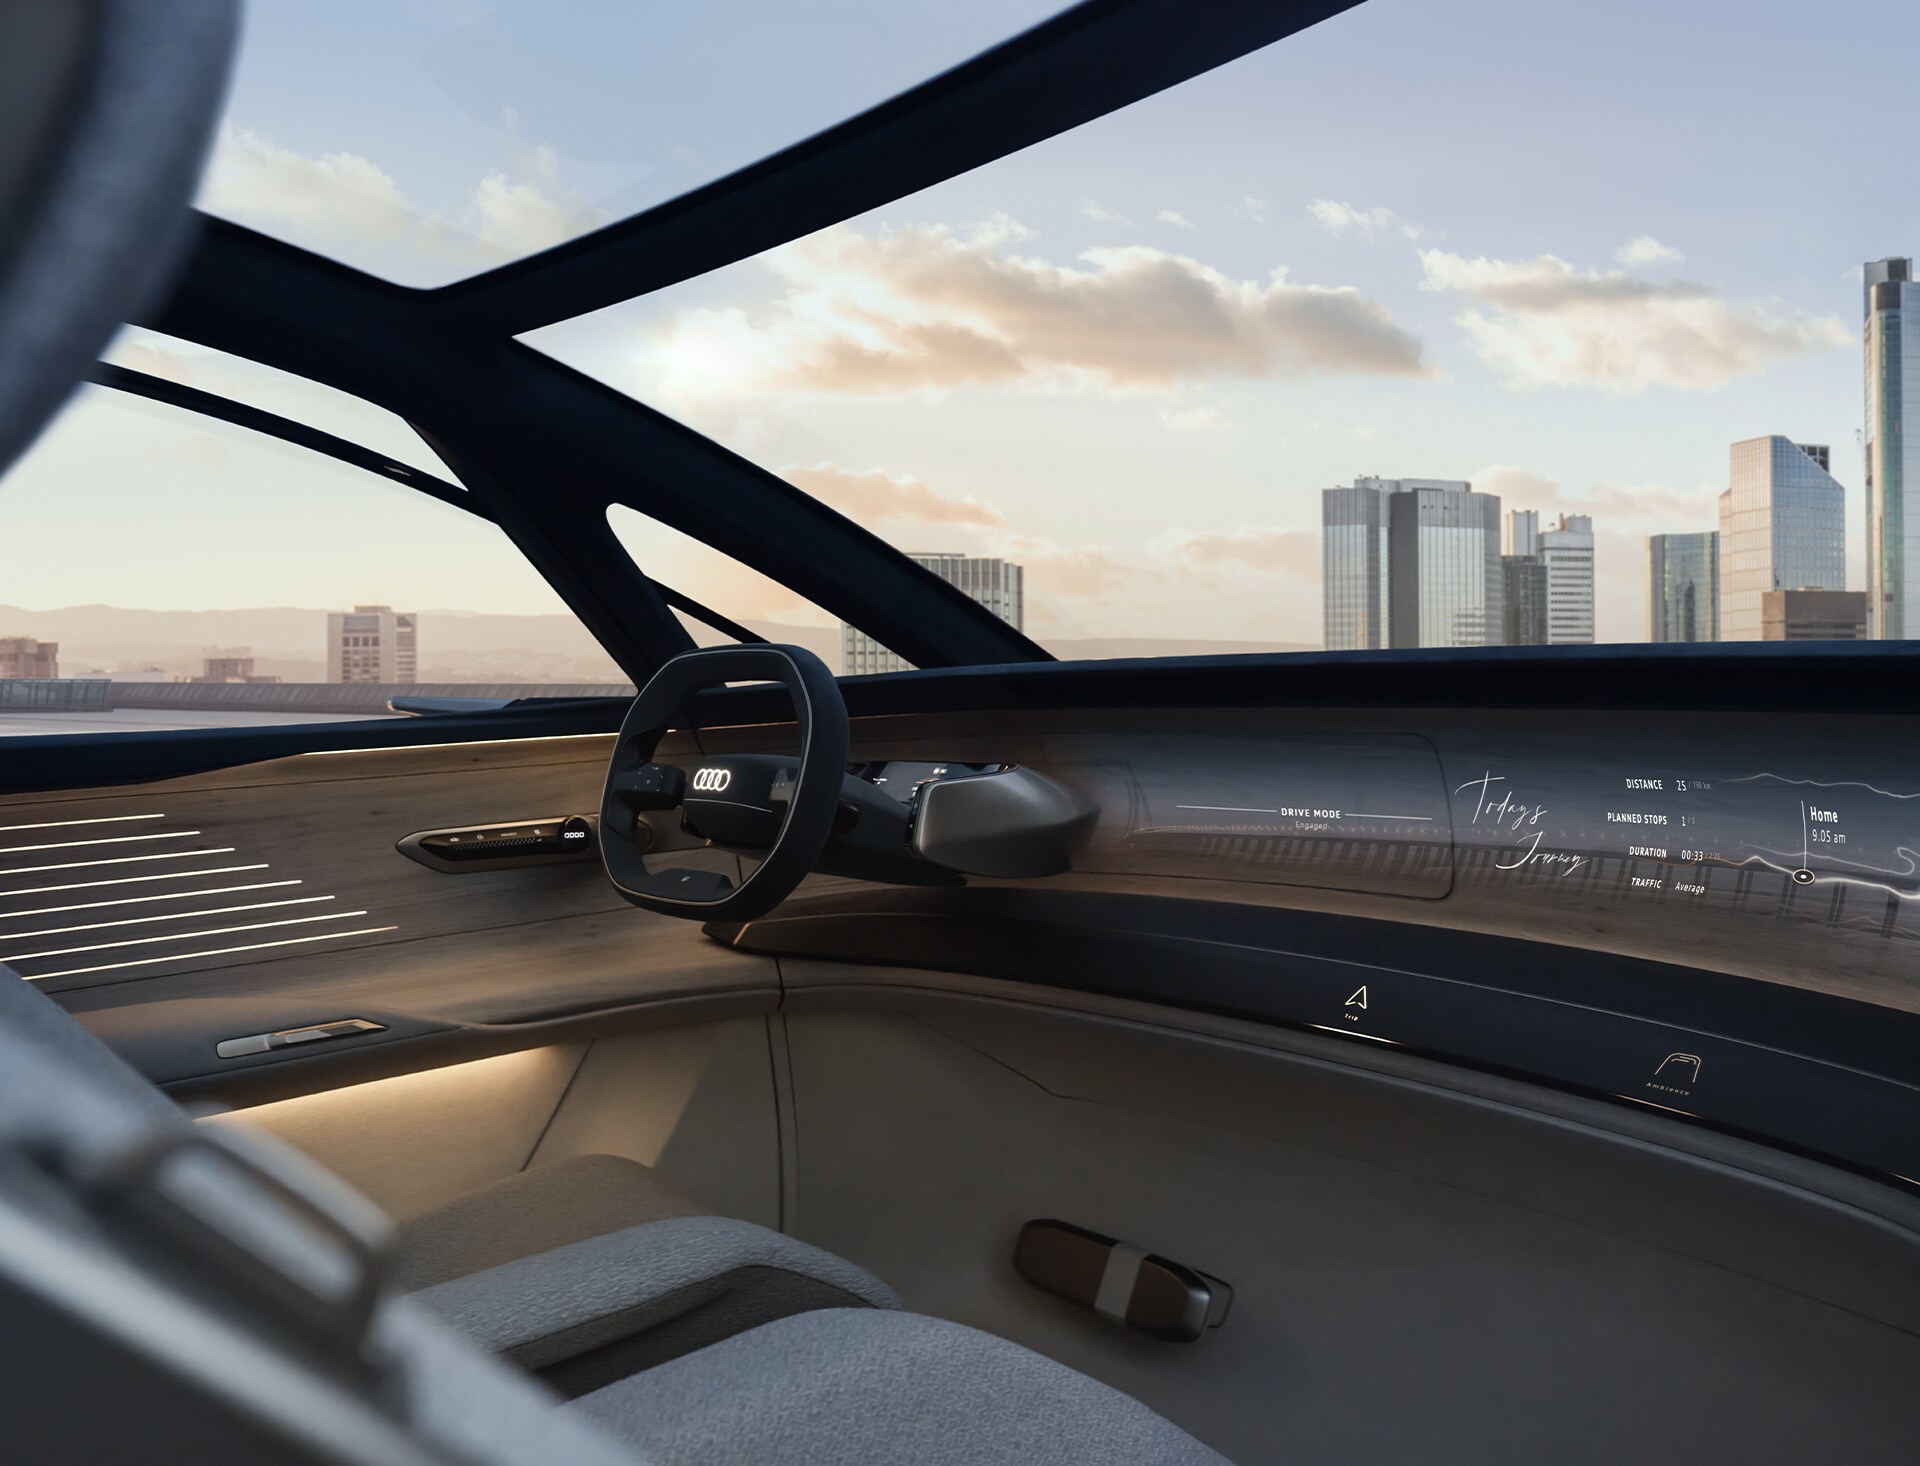 Notranjost konceptnega vozila Audi urbansphere s pogledom na volan.